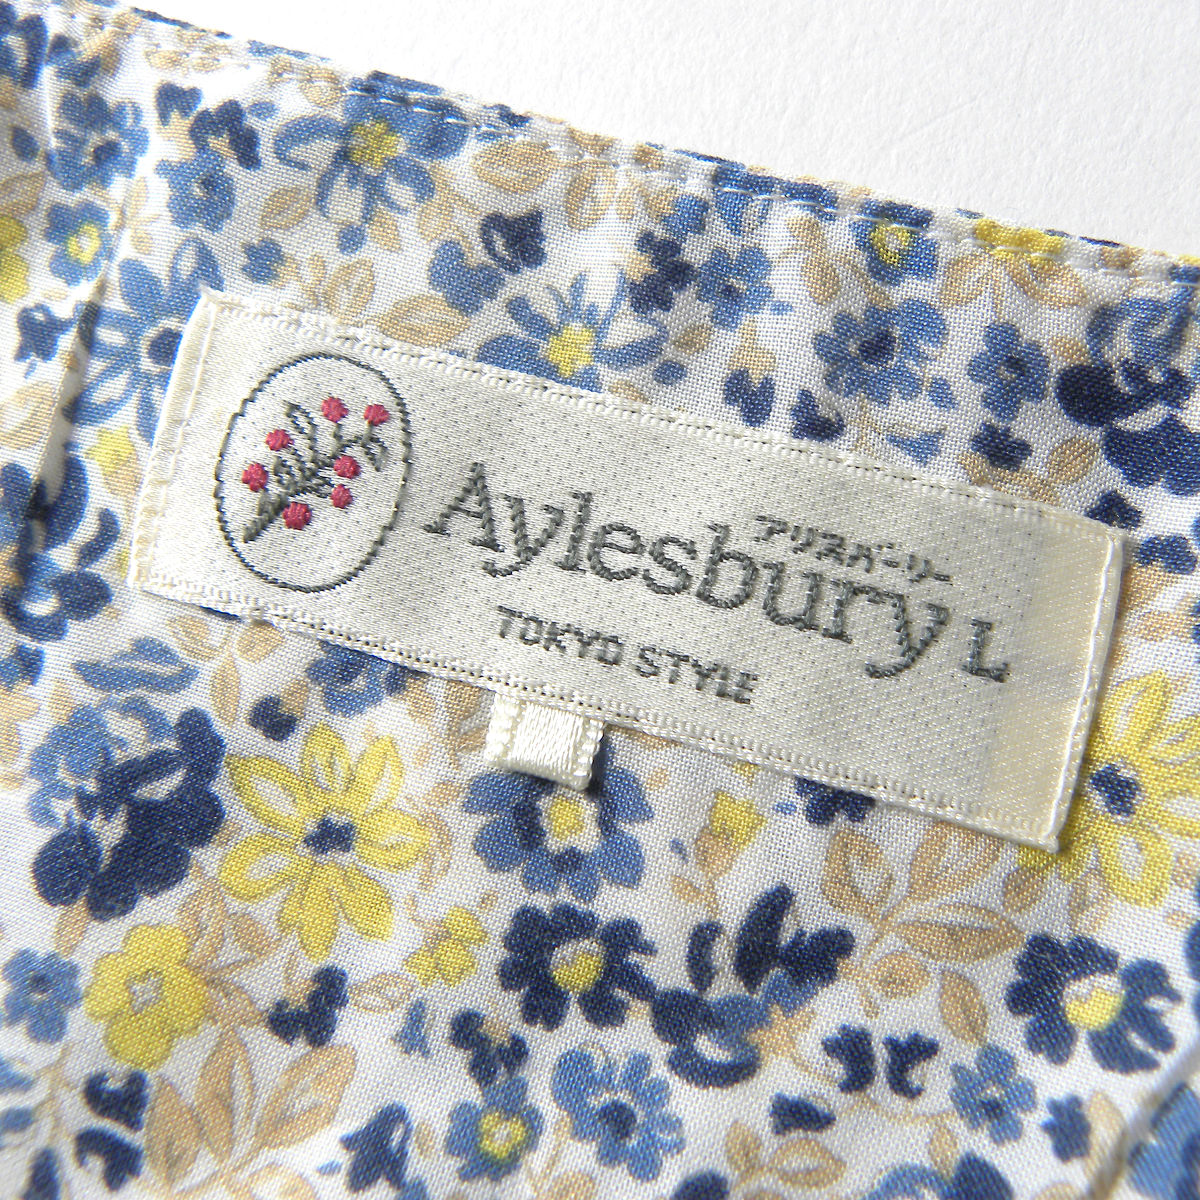  Aylesbury Aylesbury цветок принт квадратное шея булавка tuck блуза 7 минут рукав уборная возможно большой размер LL Tokyo стиль l0416-17